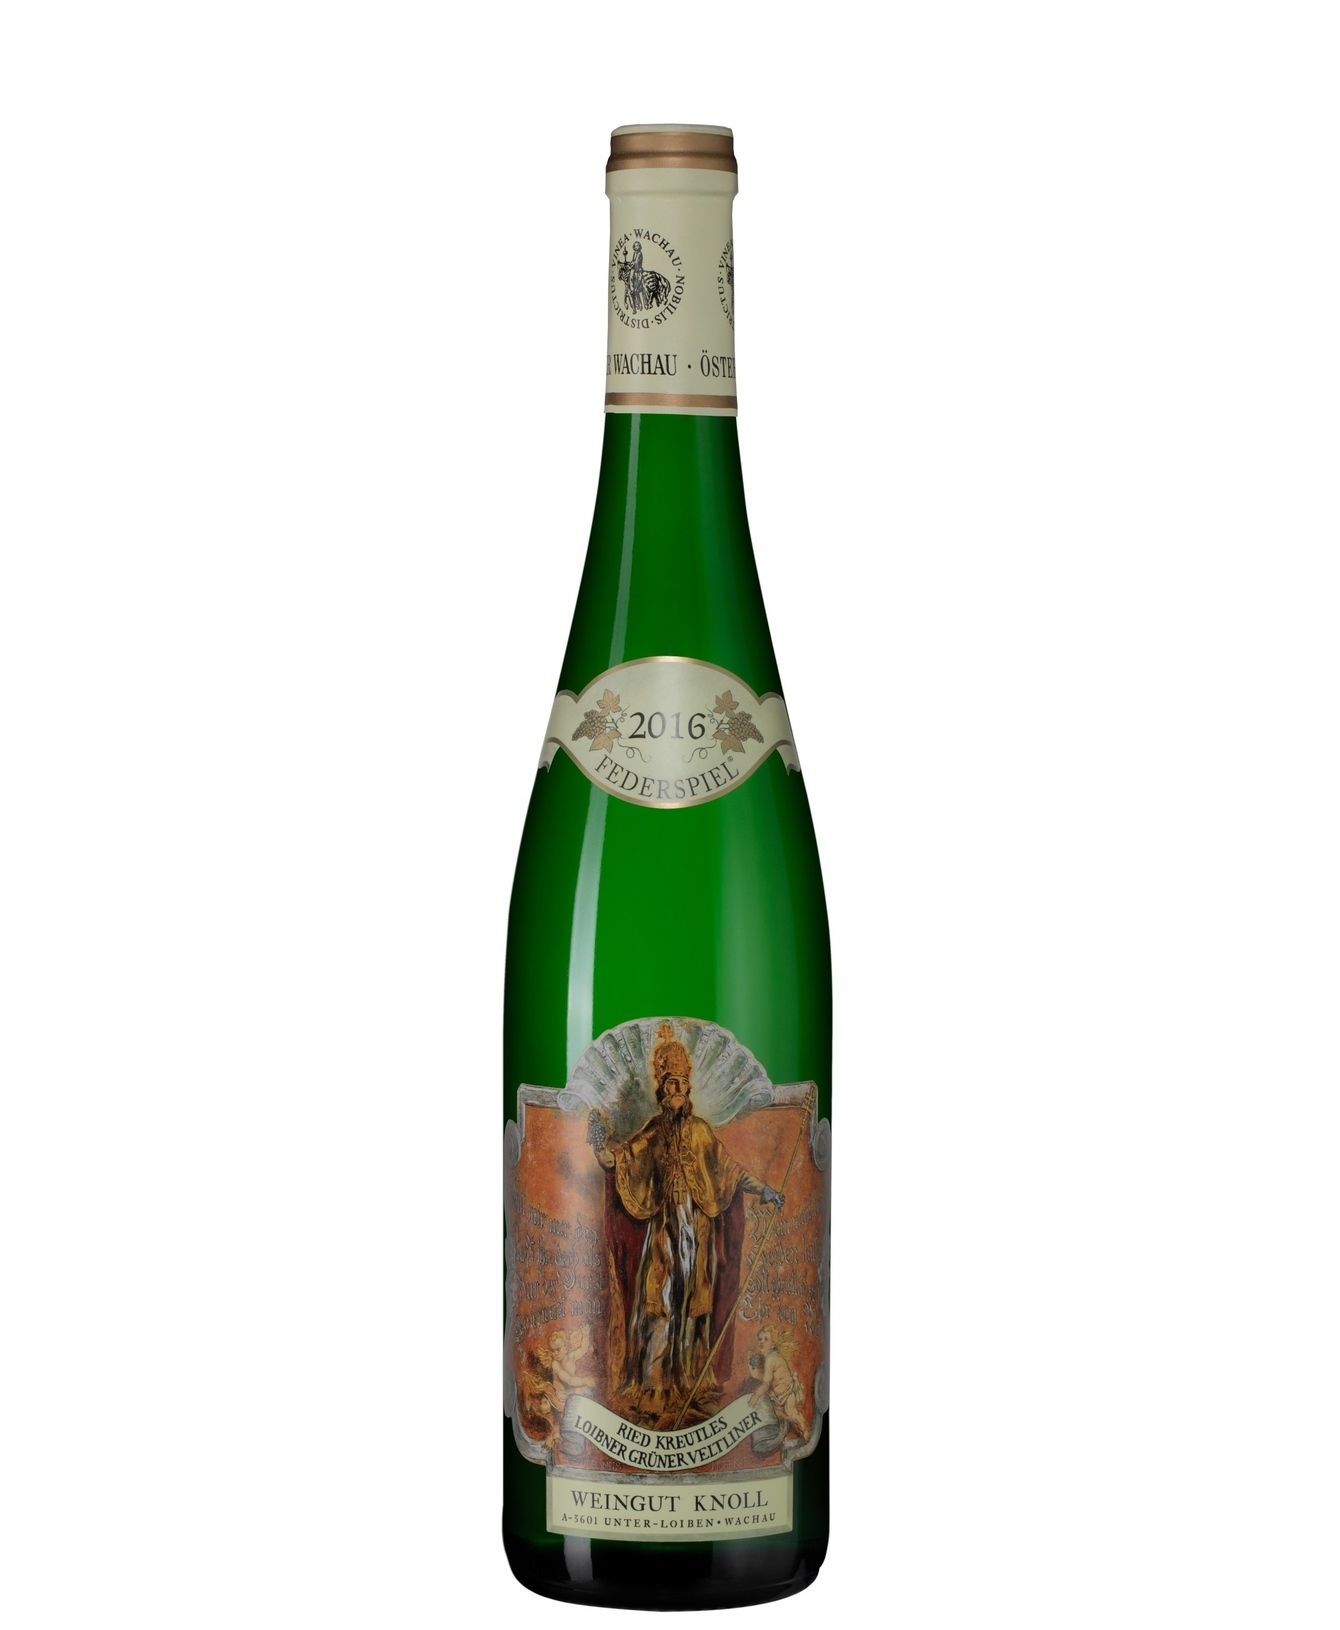 Weingut Emmerich Knoll Grüner Veltliner Loibner Steinfeder